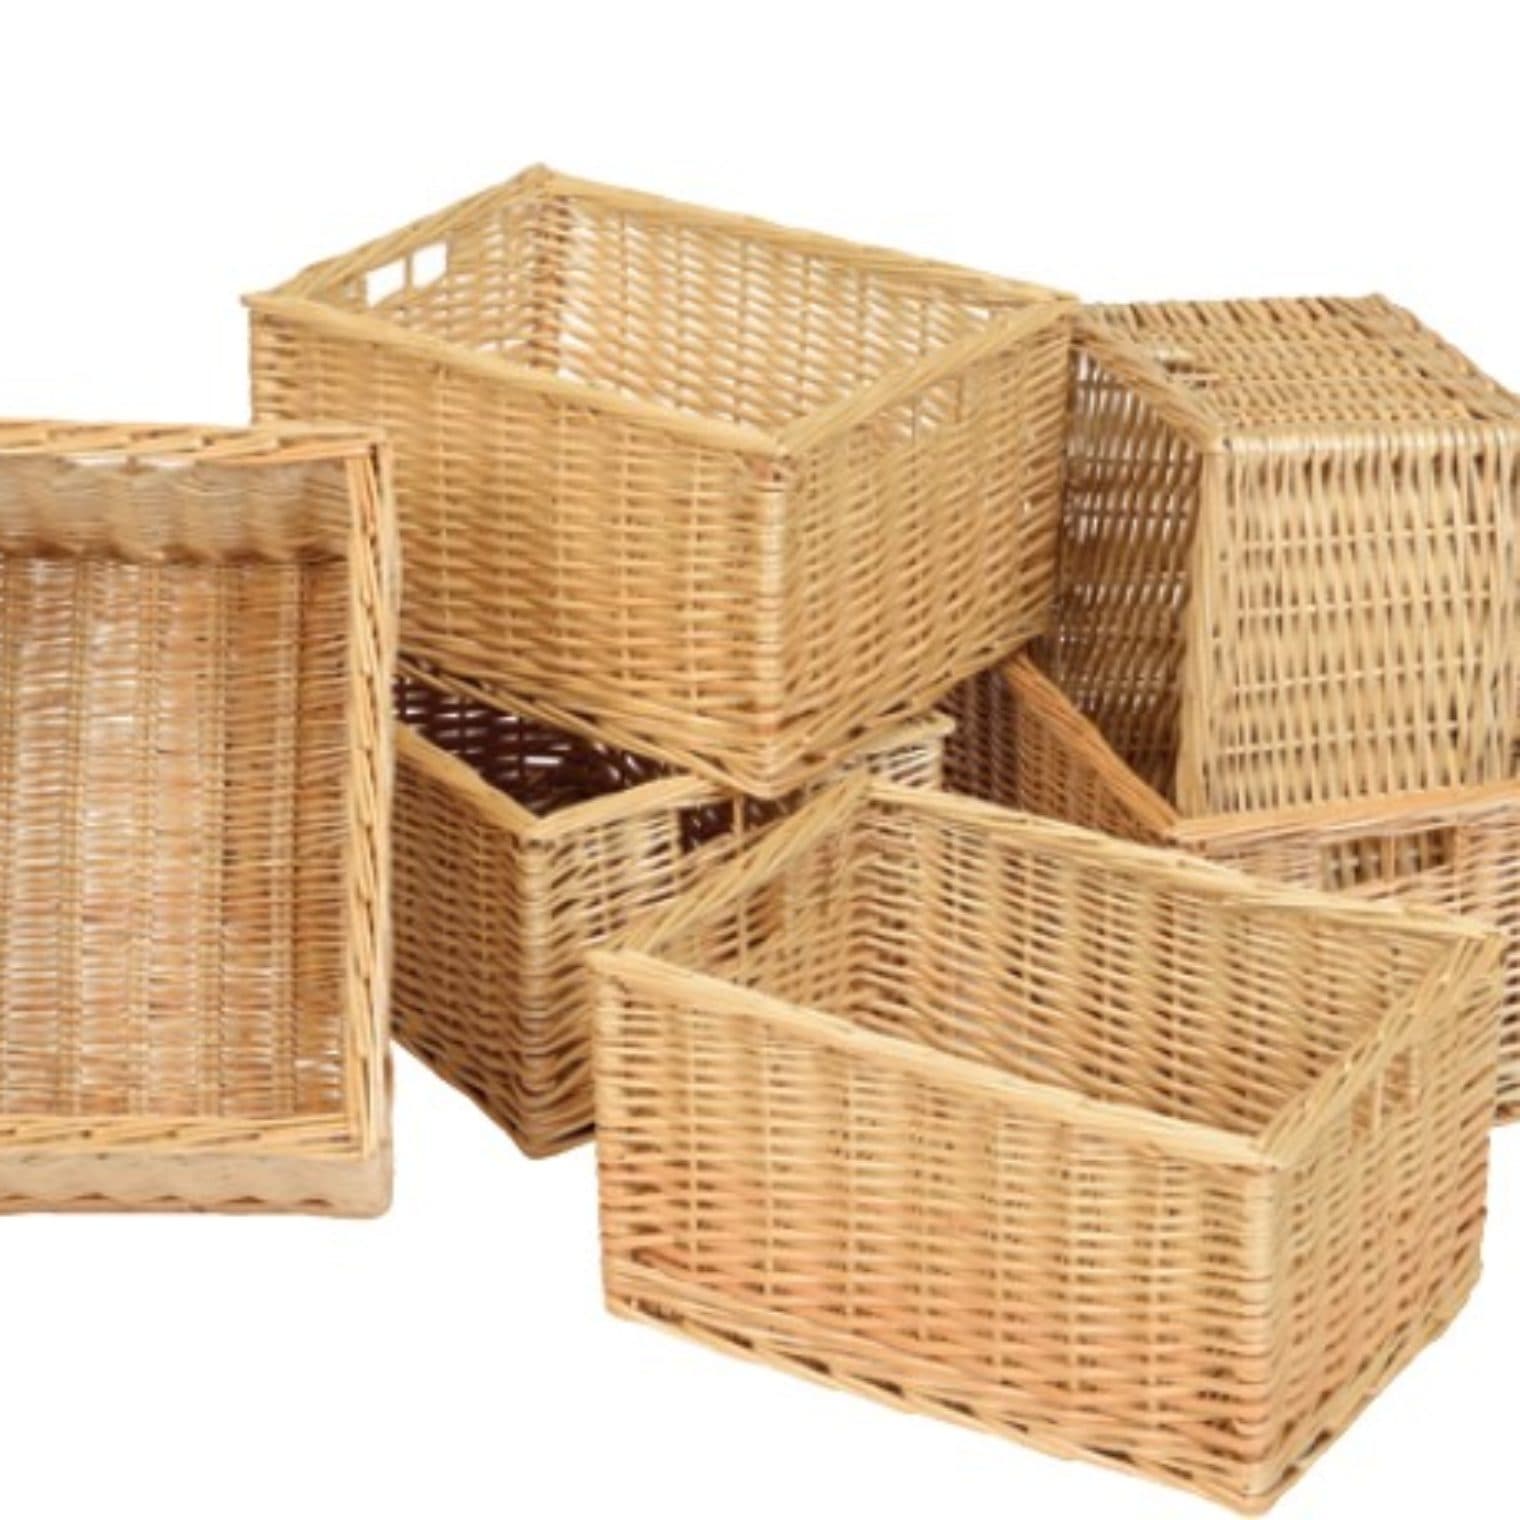 Deep wicker baskets